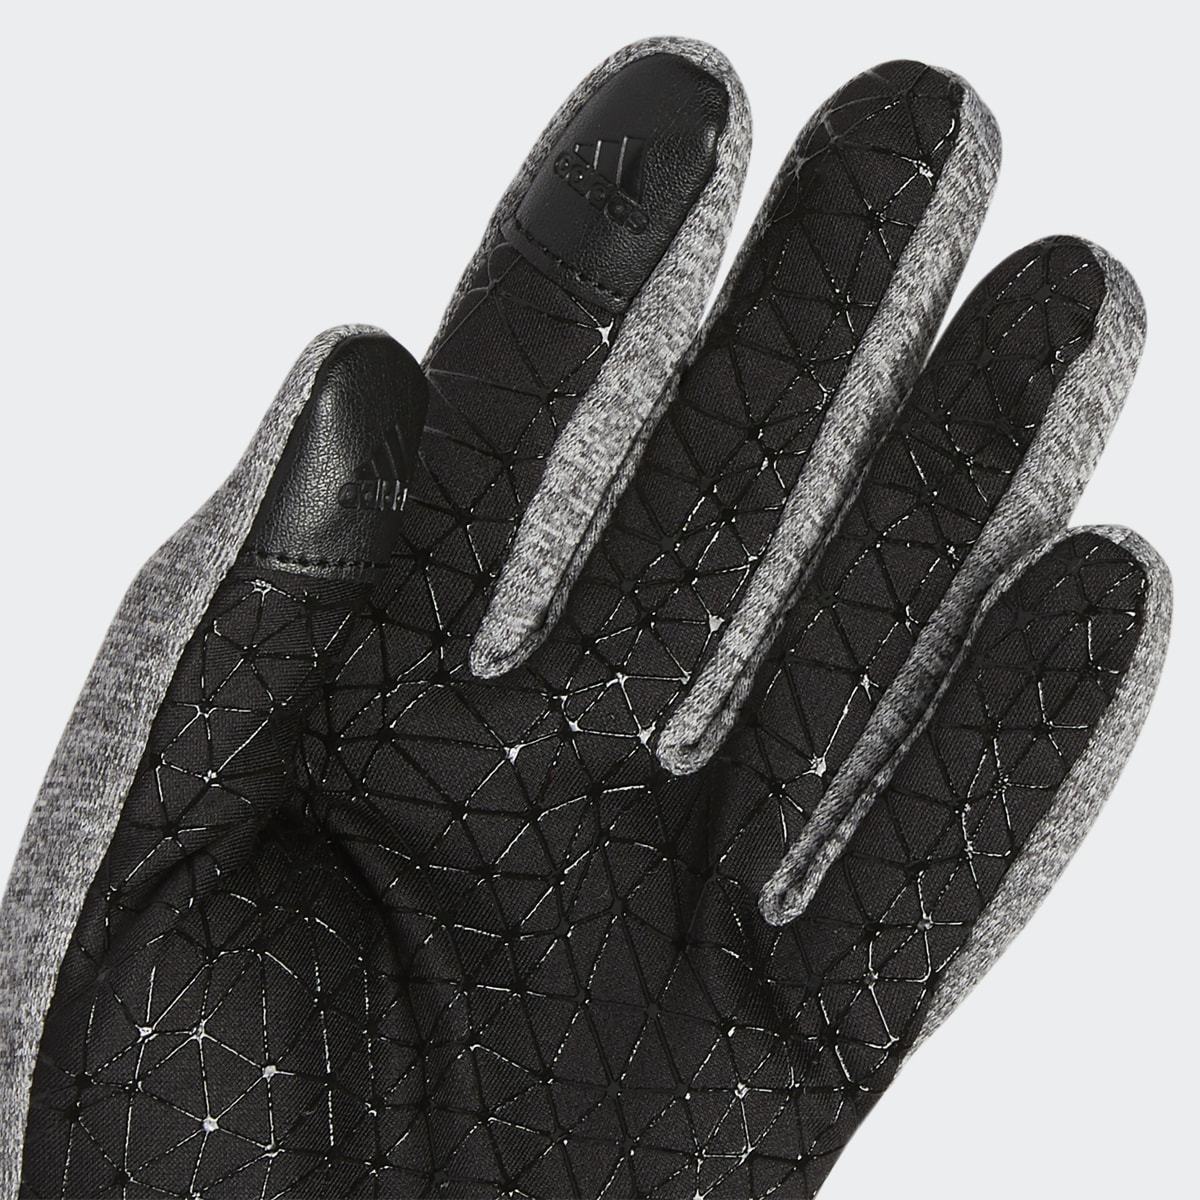 Adidas Go Gloves. 4